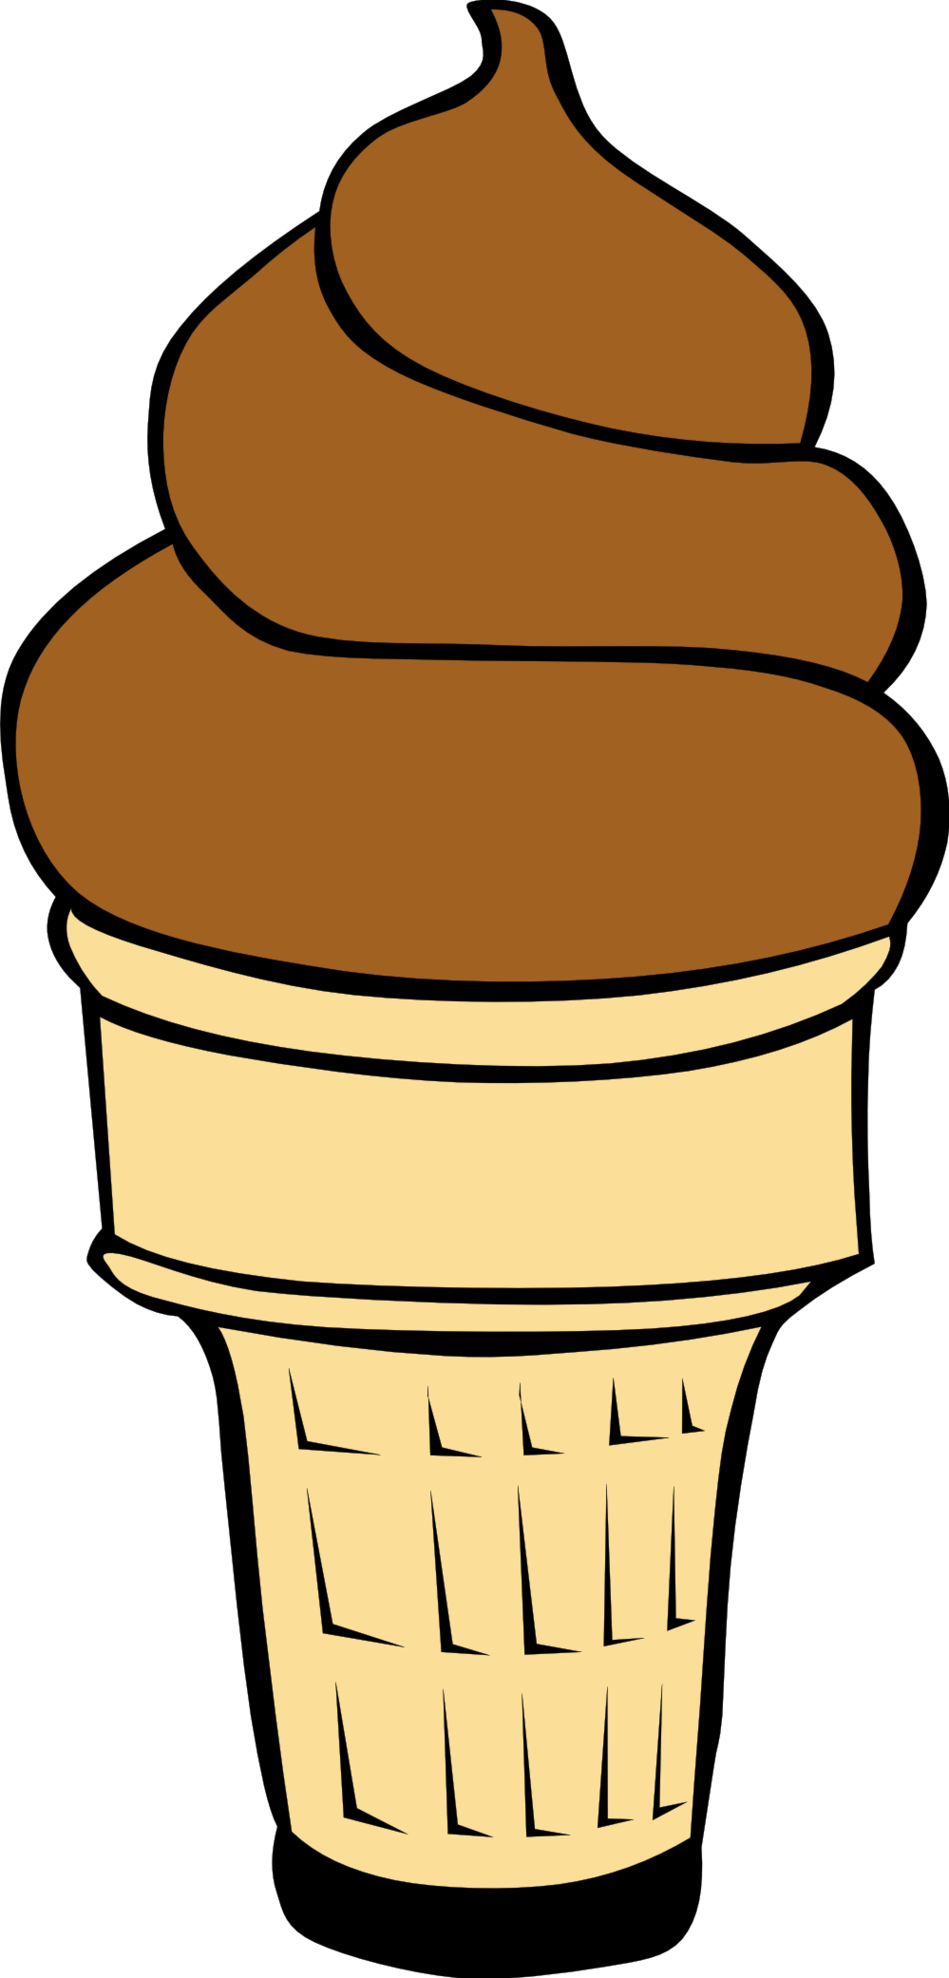 Ice cream cone ice cream in cone clipart clipartfest - dbclipart.com